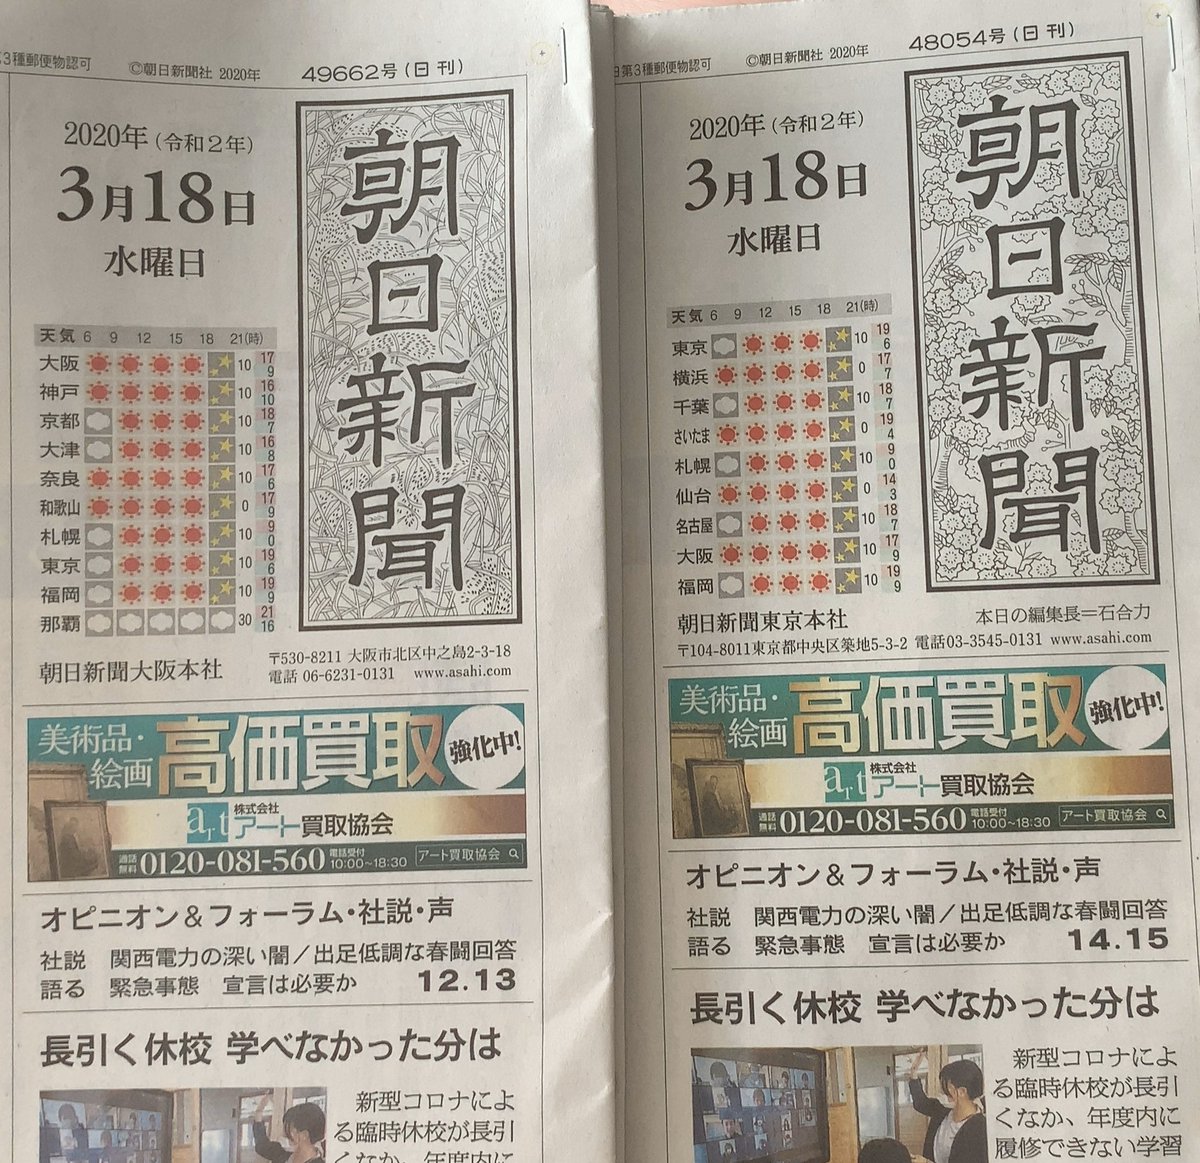 大阪の K 朝日新聞の東京本社版と大阪本社版では題字の背景が違うって事を知った 何回か東京本社版は買ったことあるけど今まで気づかなかった 朝日新聞